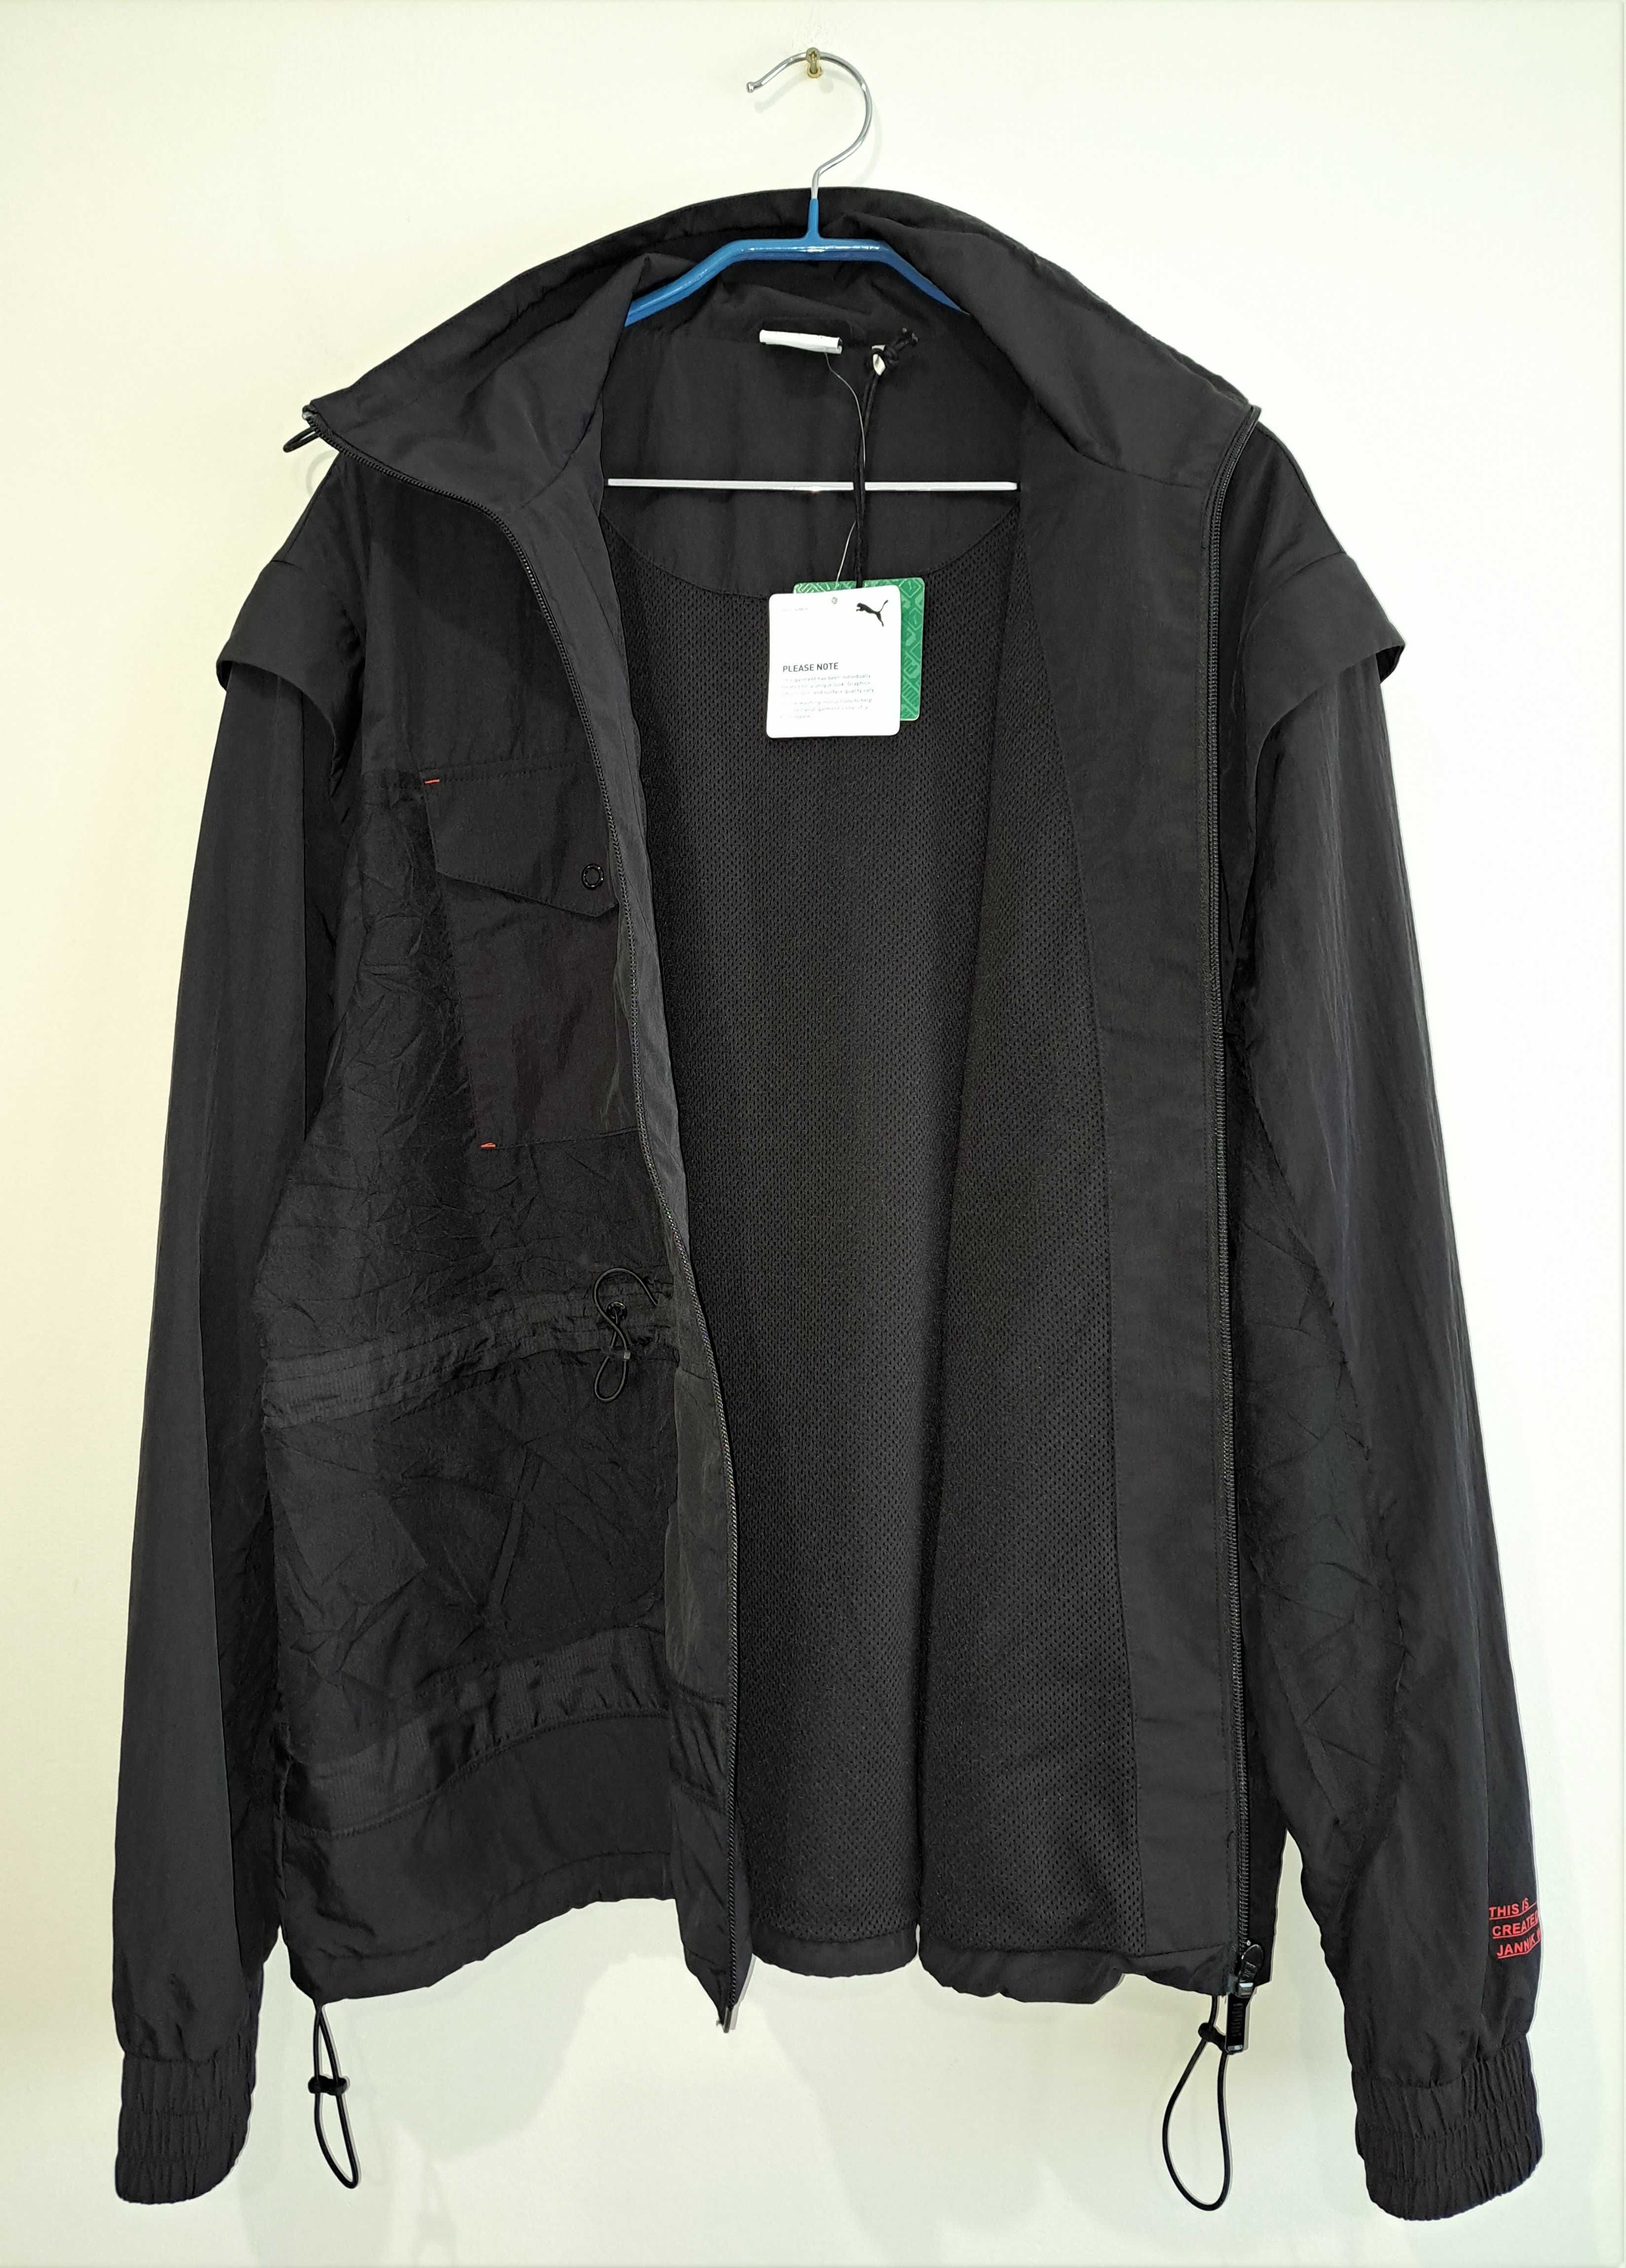 Куртка ветровка puma & jannik wikkelsø davidsen (размер L)